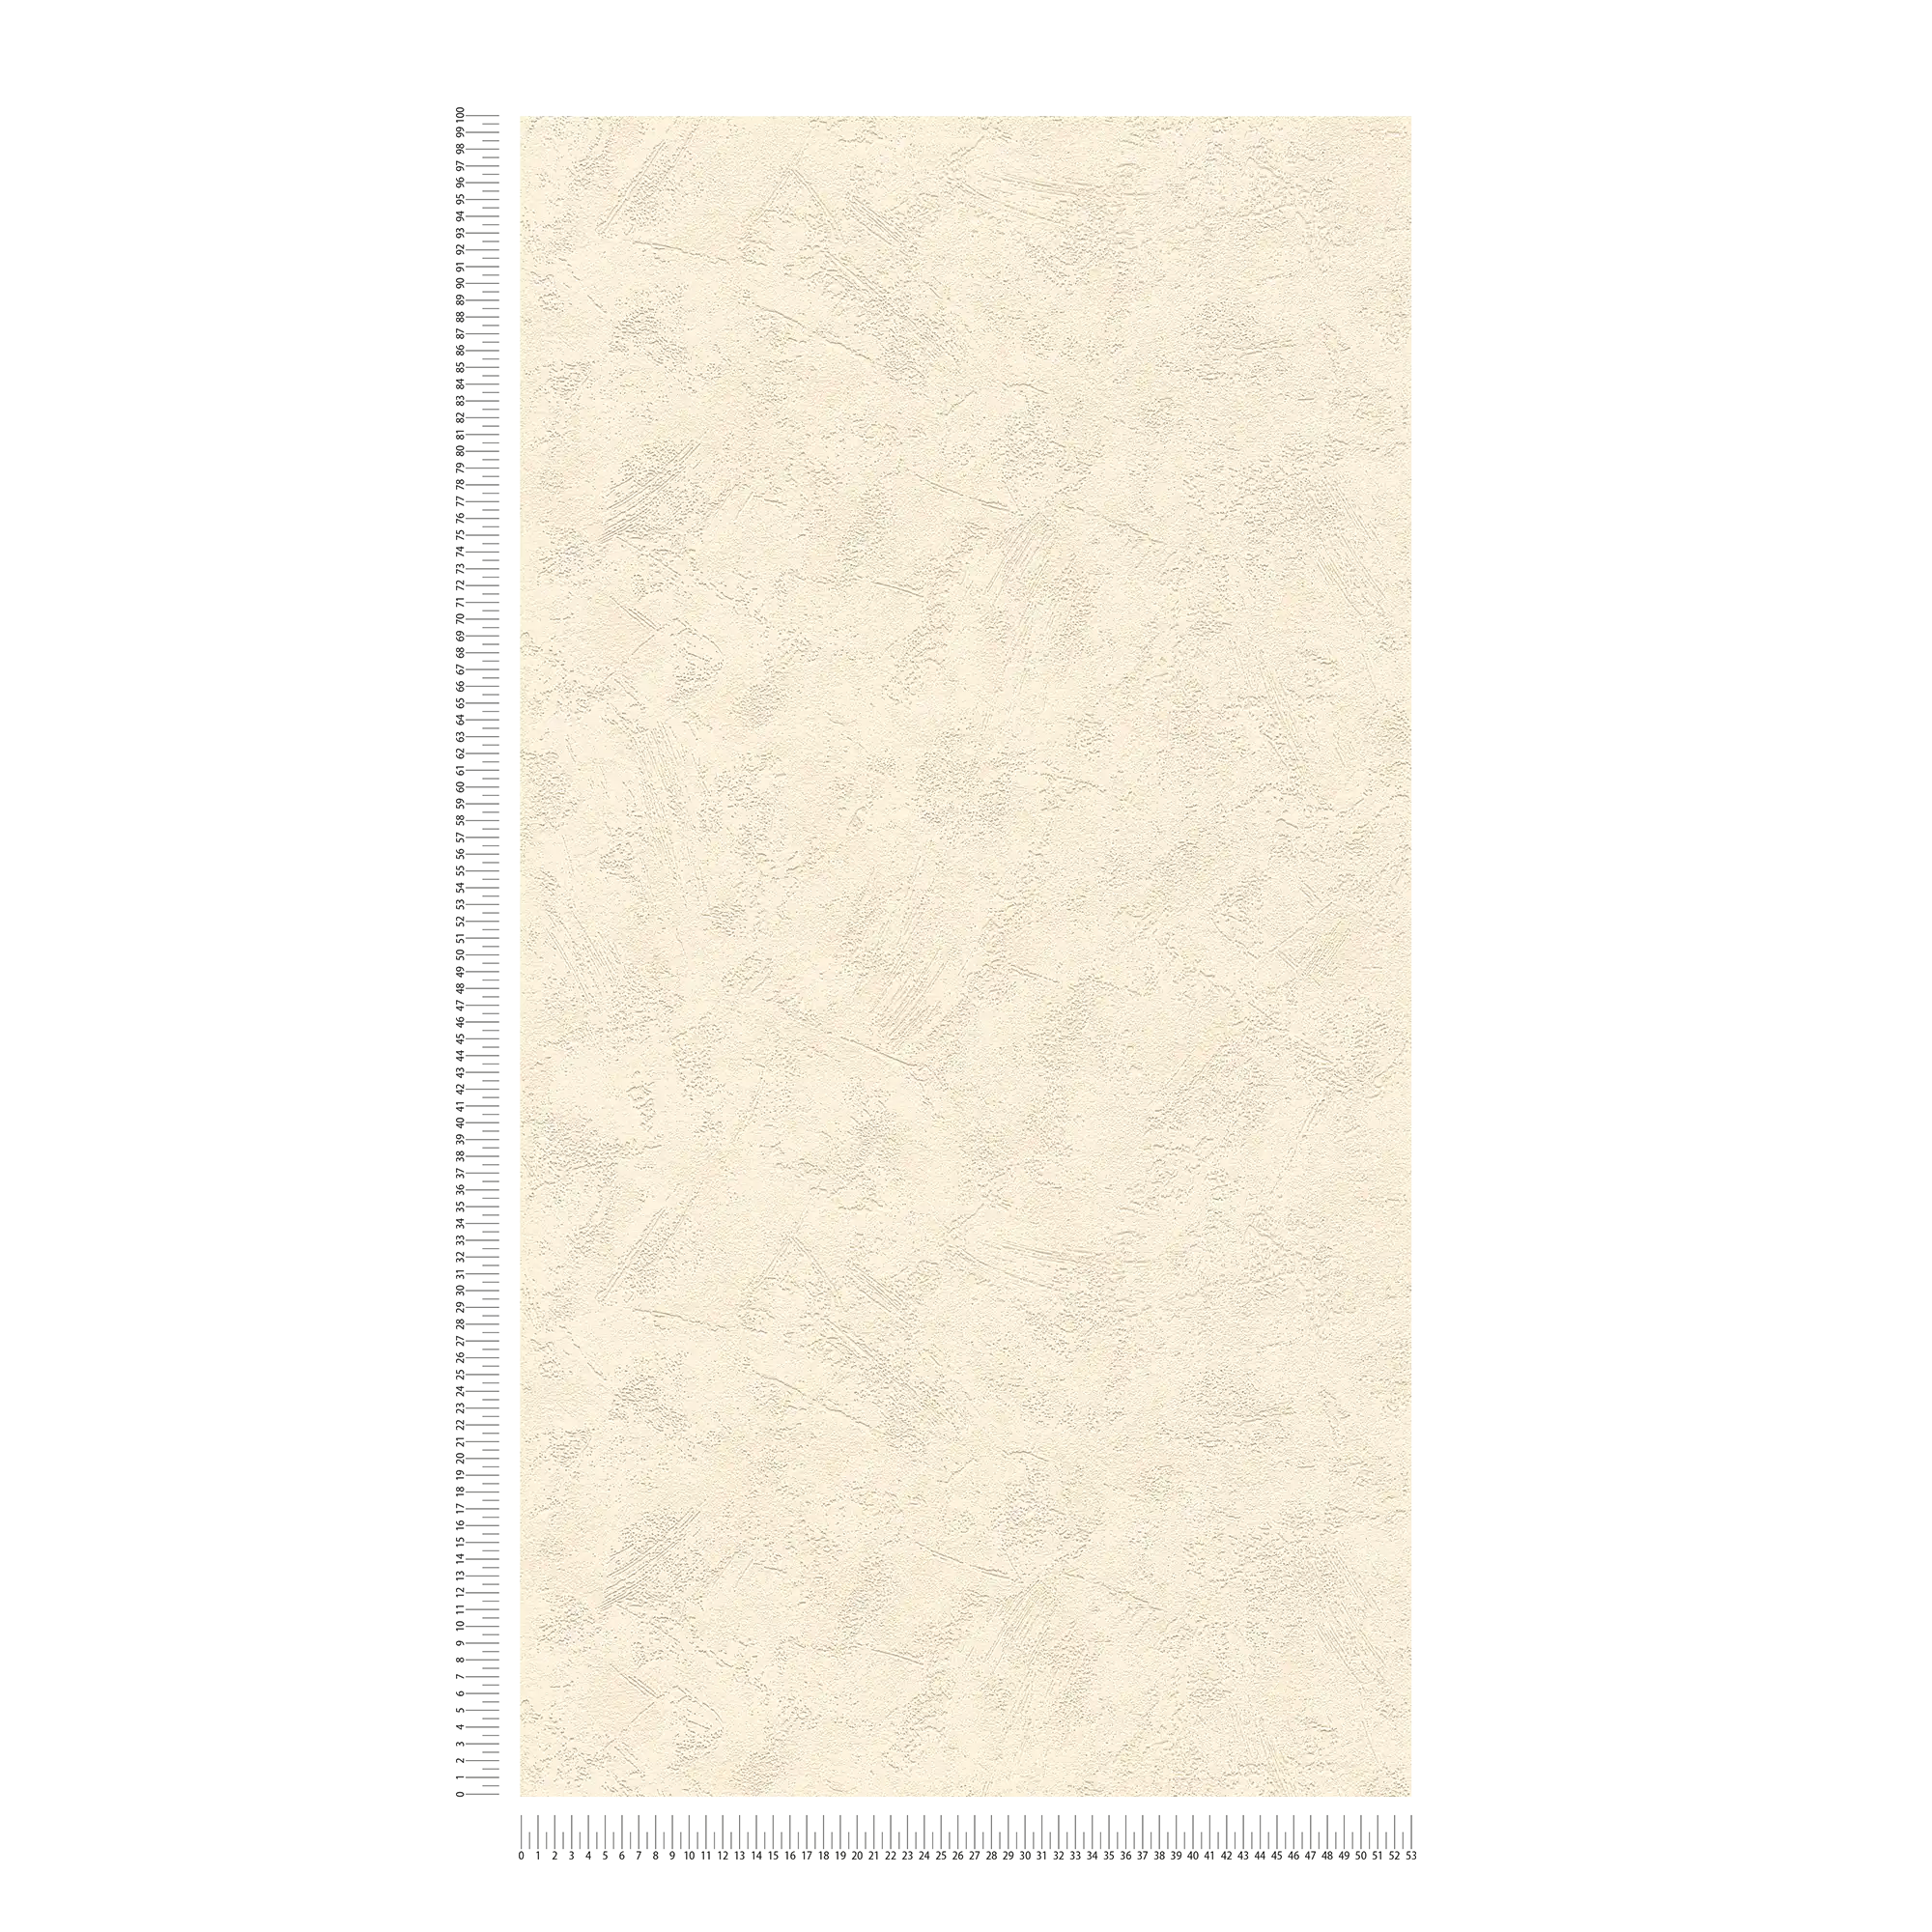             Carta da parati effetto intonaco con texture intonaco cancellato - crema
        